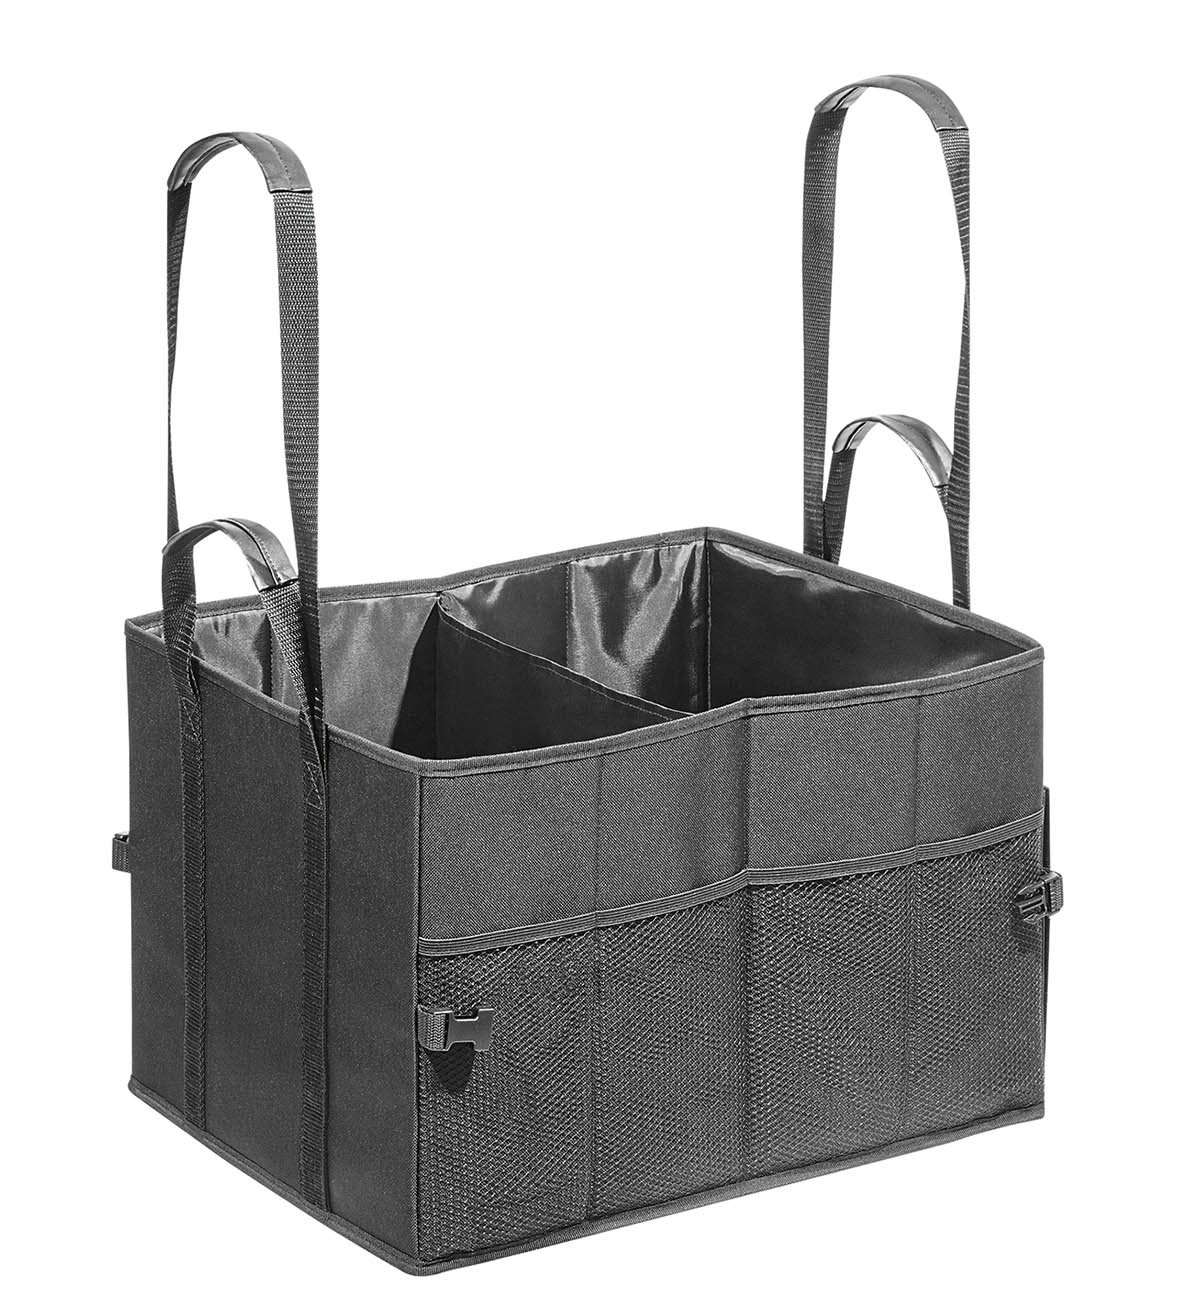 WEDO 582521 Kofferraumtasche Big Box Shopper (Größe L, Polyester, 45 x 35 x 30 cm, ca. 47,25 Liter Fassungsvermögen, Innen- und Außentaschen, Klettverschluss, faltbar, mind. 100 kg Traglast) schwarz von WEDO